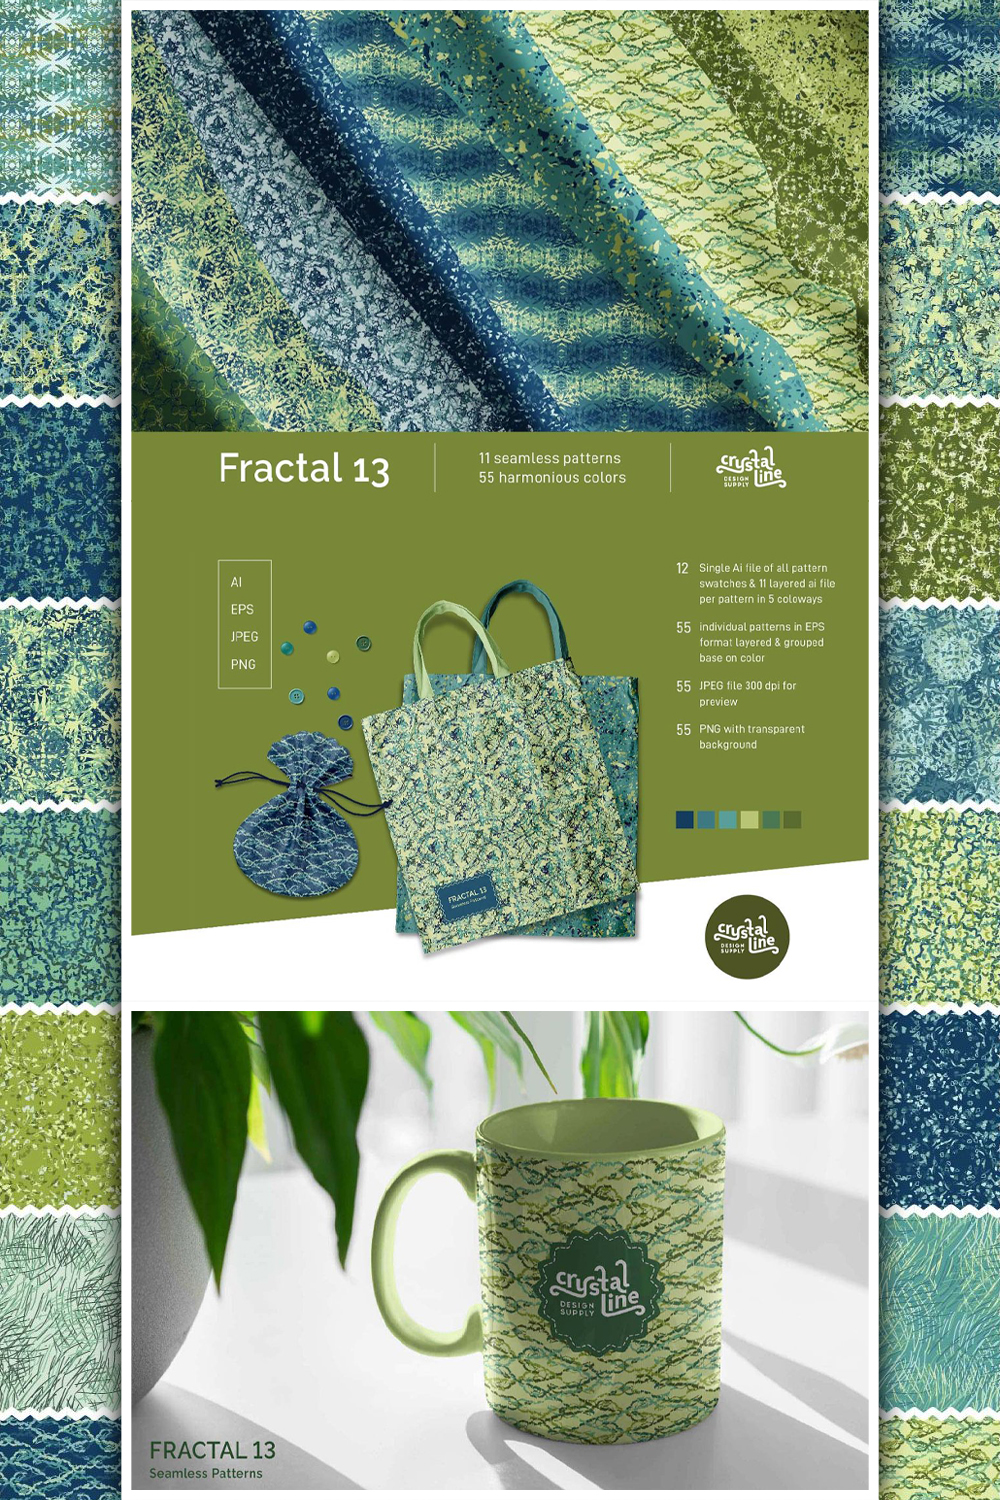 Fractal Patterns 13 pinterest image.